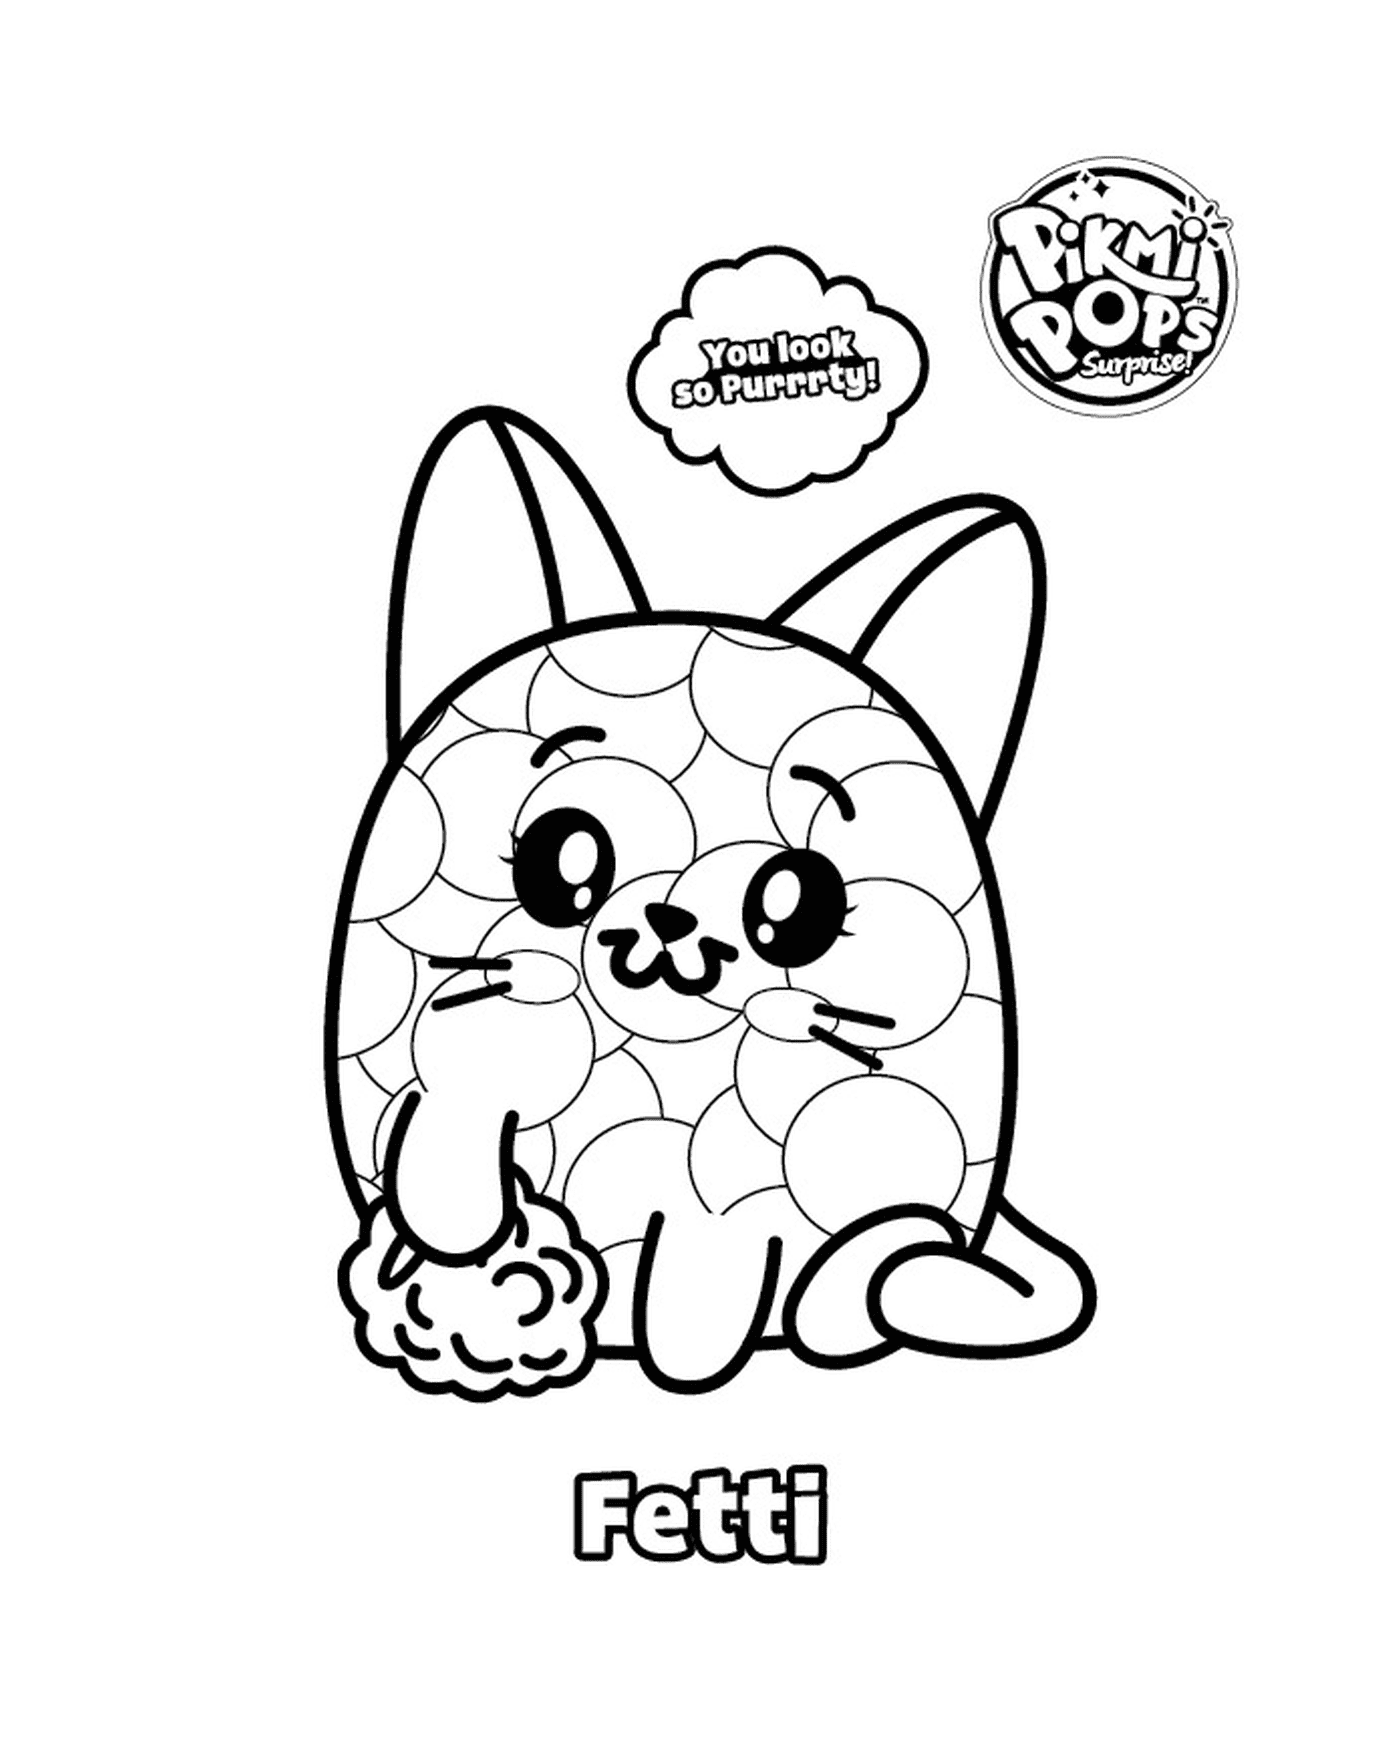  Pikmi Pop com um gato chamado Fetti 